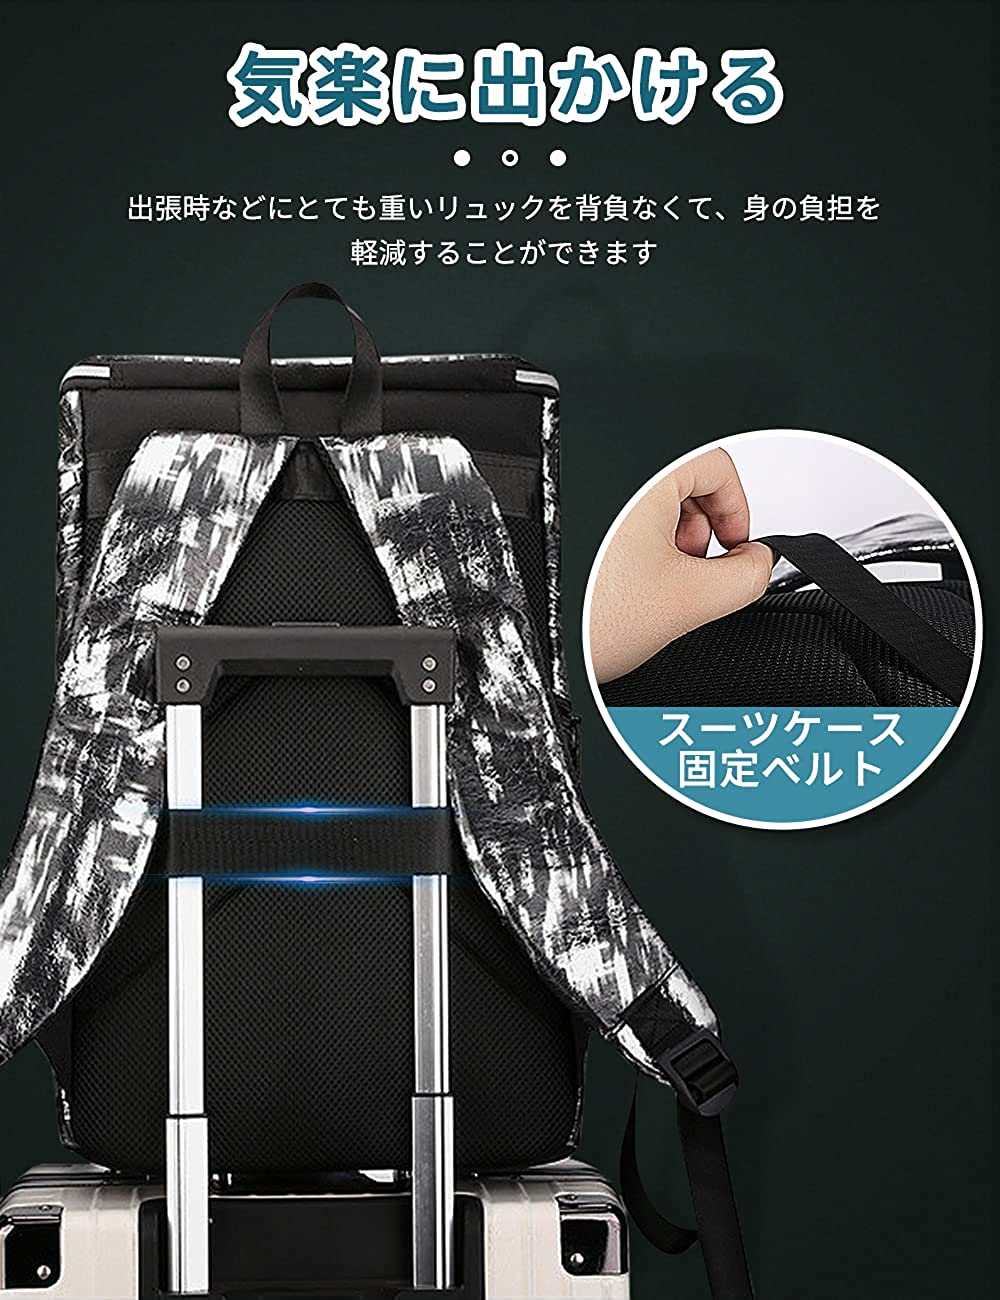 <transcy>AISFA Stylish high-capacity waterproof backpack</transcy>